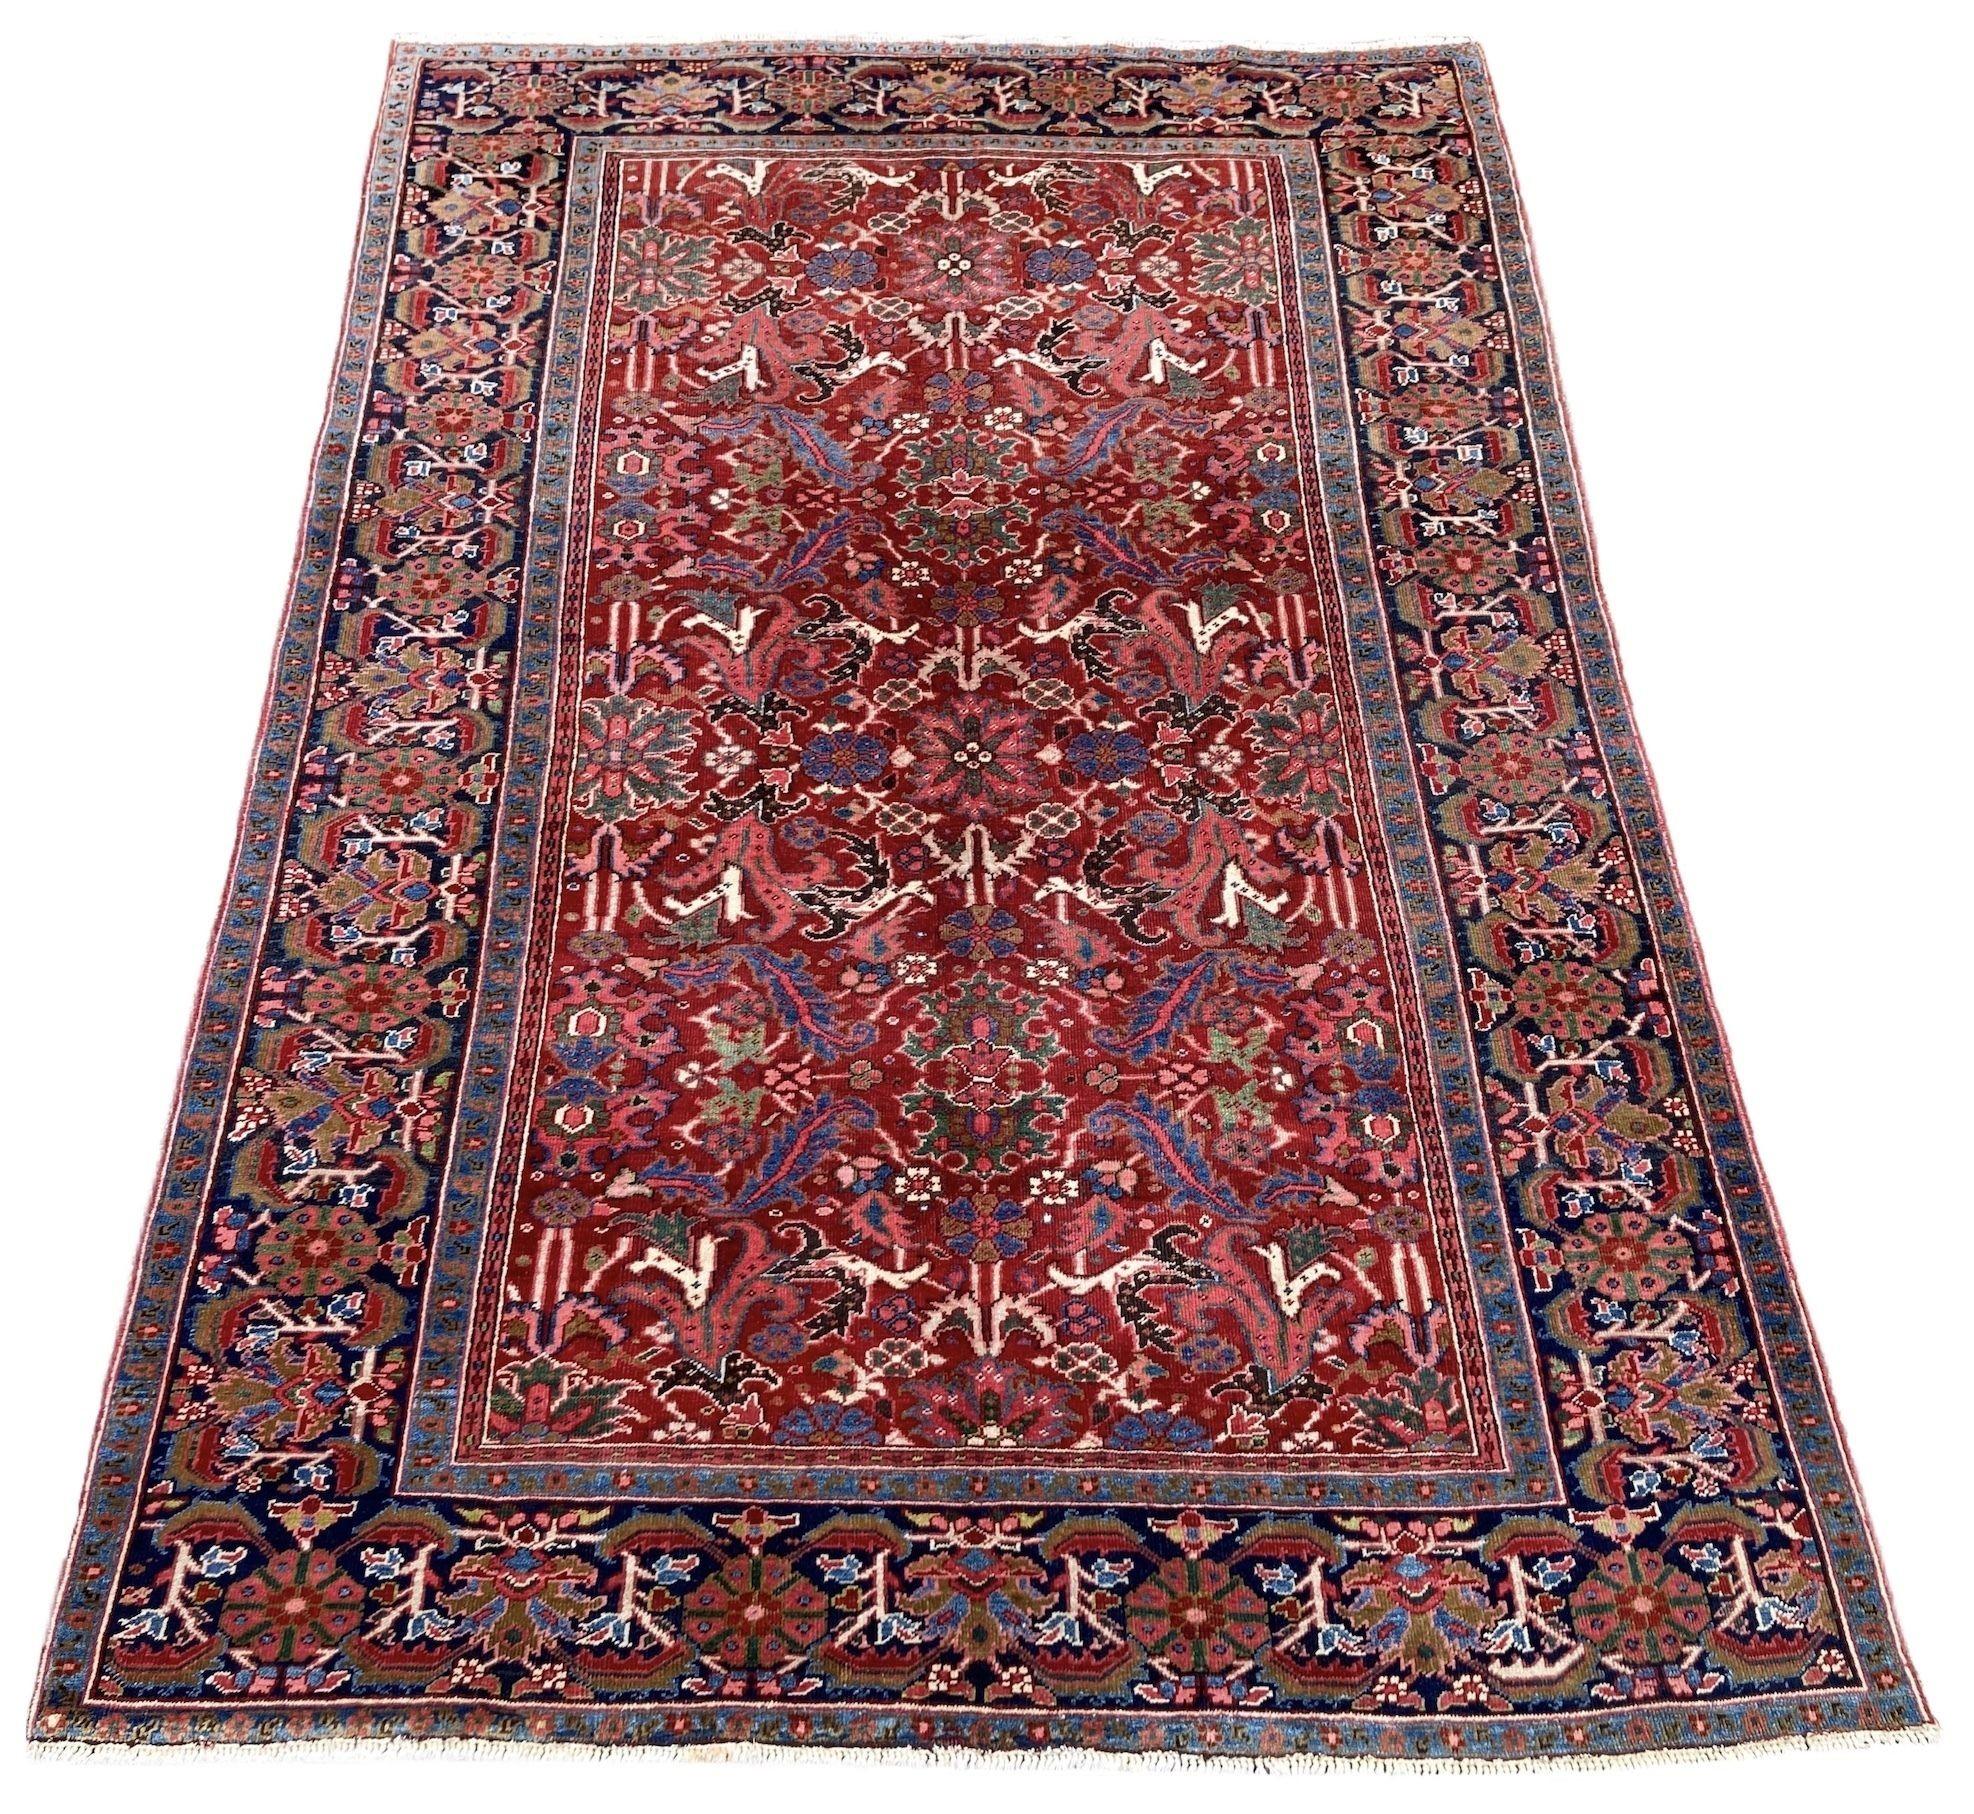 Ein schöner antiker Heriz-Teppich, handgewebt um 1920 mit einem attraktiven Allover-Muster aus Blumen und Sträuchern auf einem ziegelroten Feld und einer tiefen indigoblauen Bordüre. Ein sehr dekorativer Teppich mit tollen Sekundärfarben.
Größe: